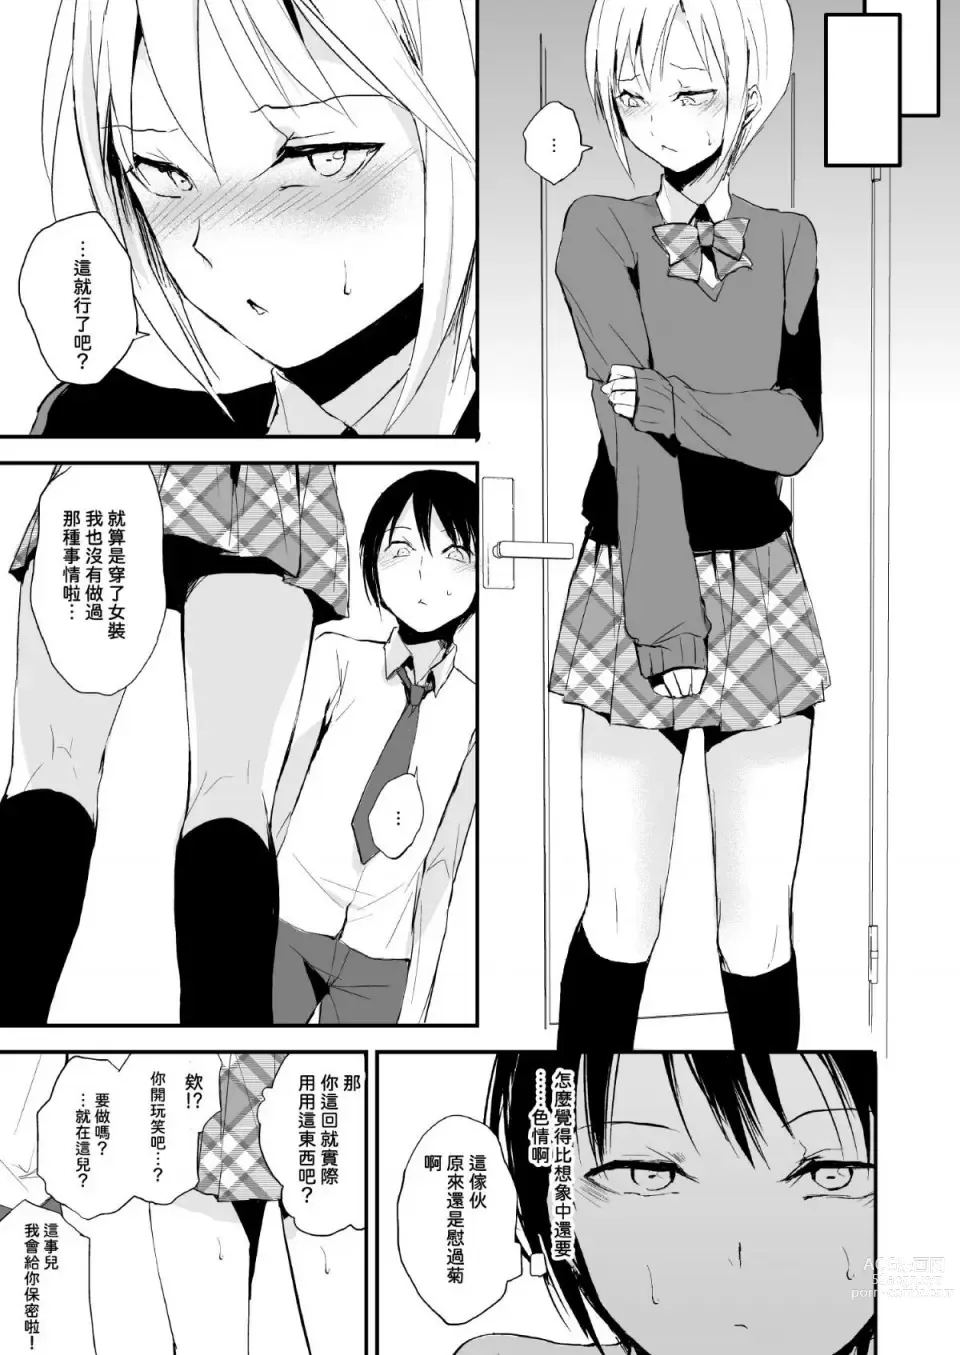 Page 6 of doujinshi Izumi-kun to Yuuki-kun 1+2